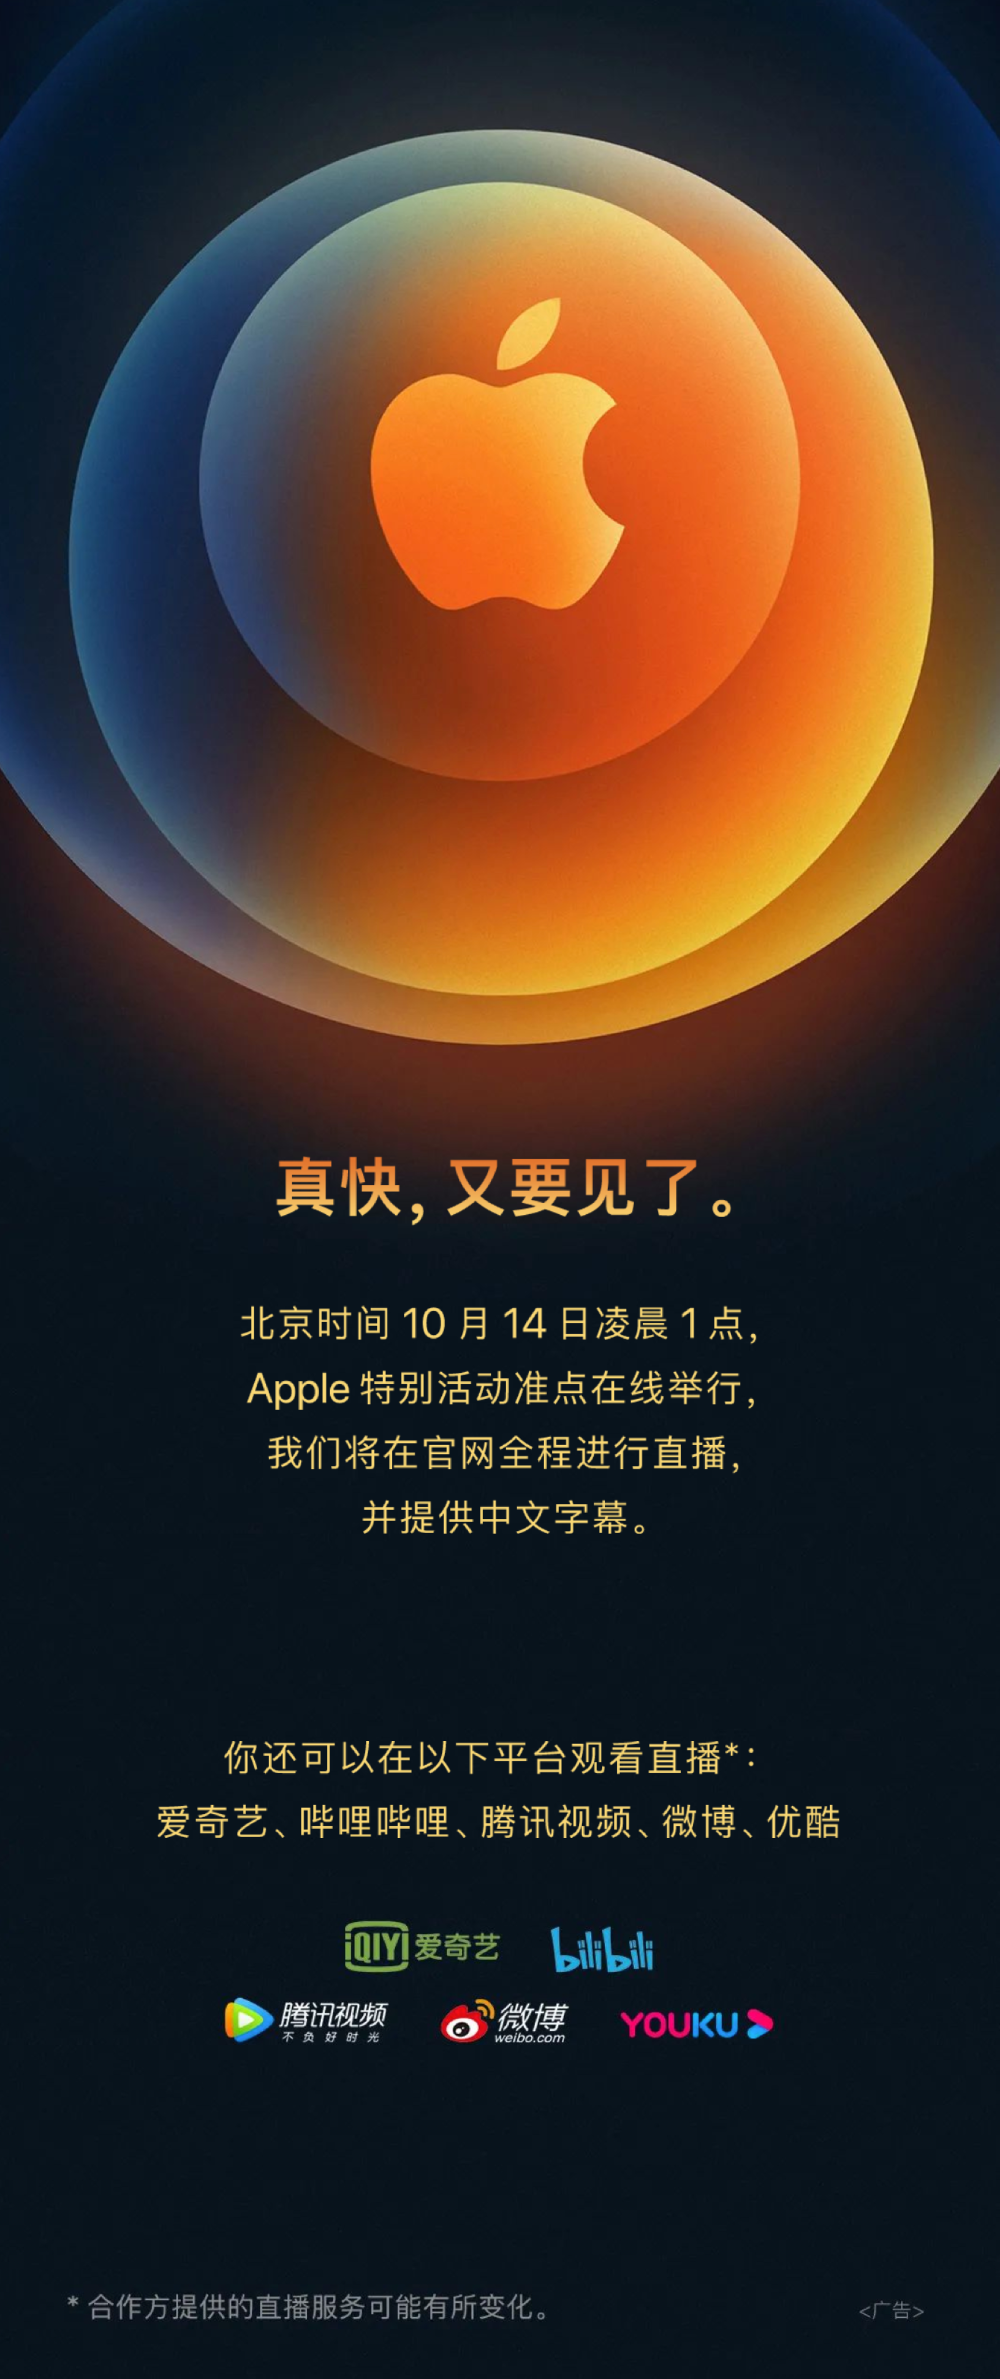 iphone 12发布时间锁定:14日凌晨1点,苹果官宣海报揭秘!